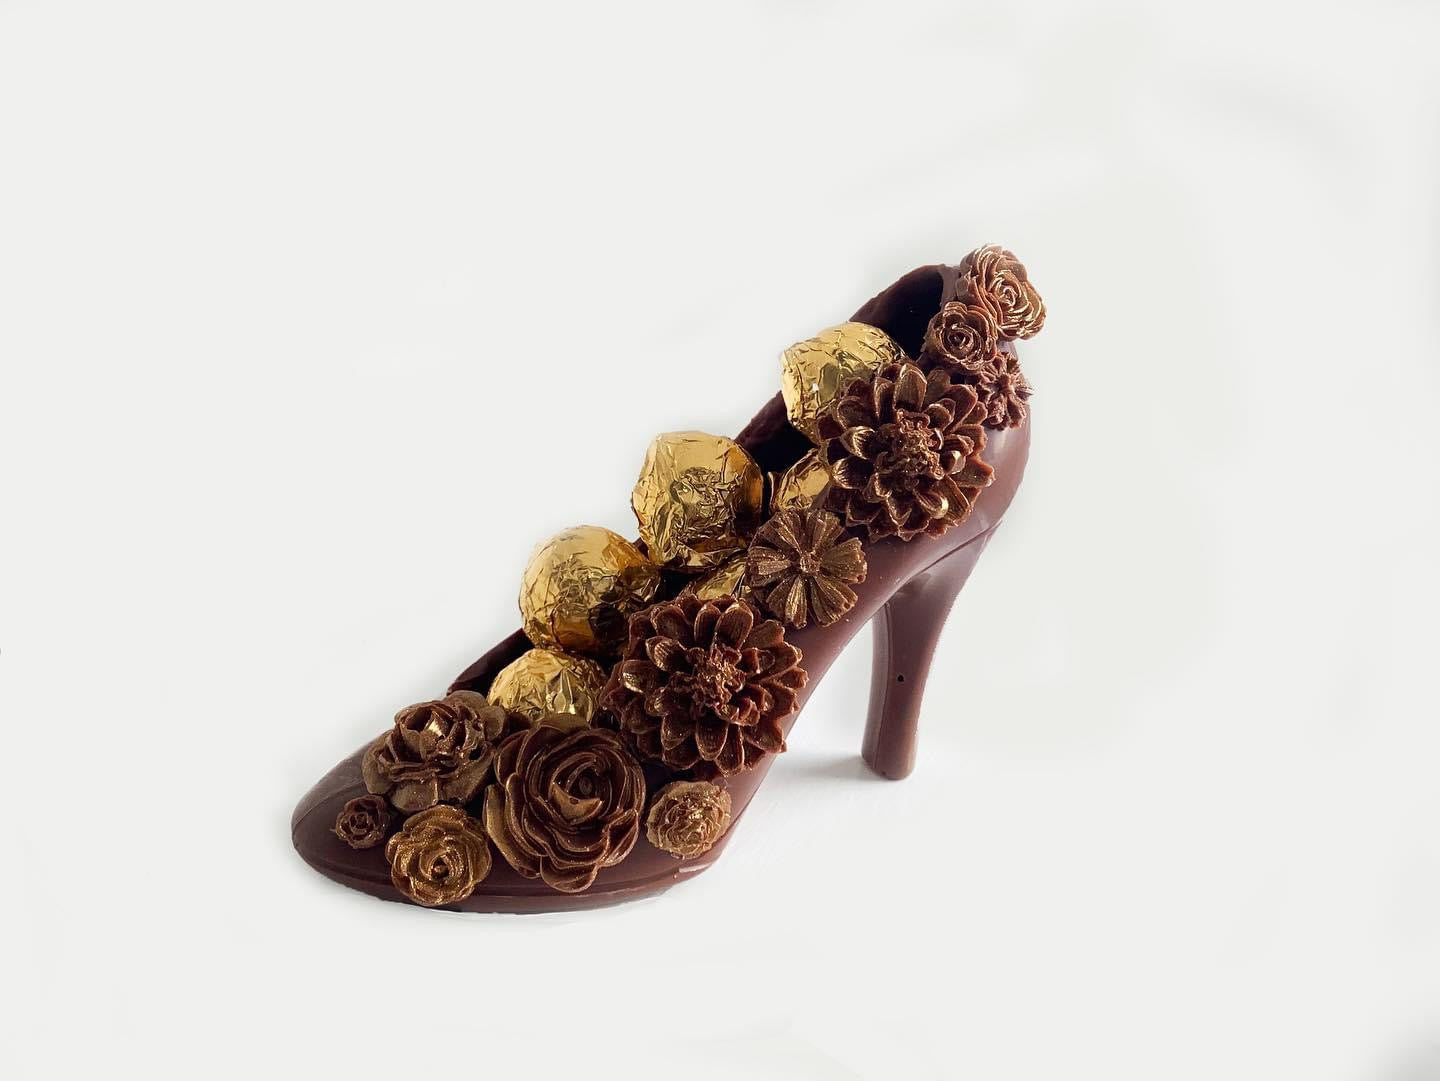 Handmade Vegan Chocolate Shoe with handmade Gold Flowers